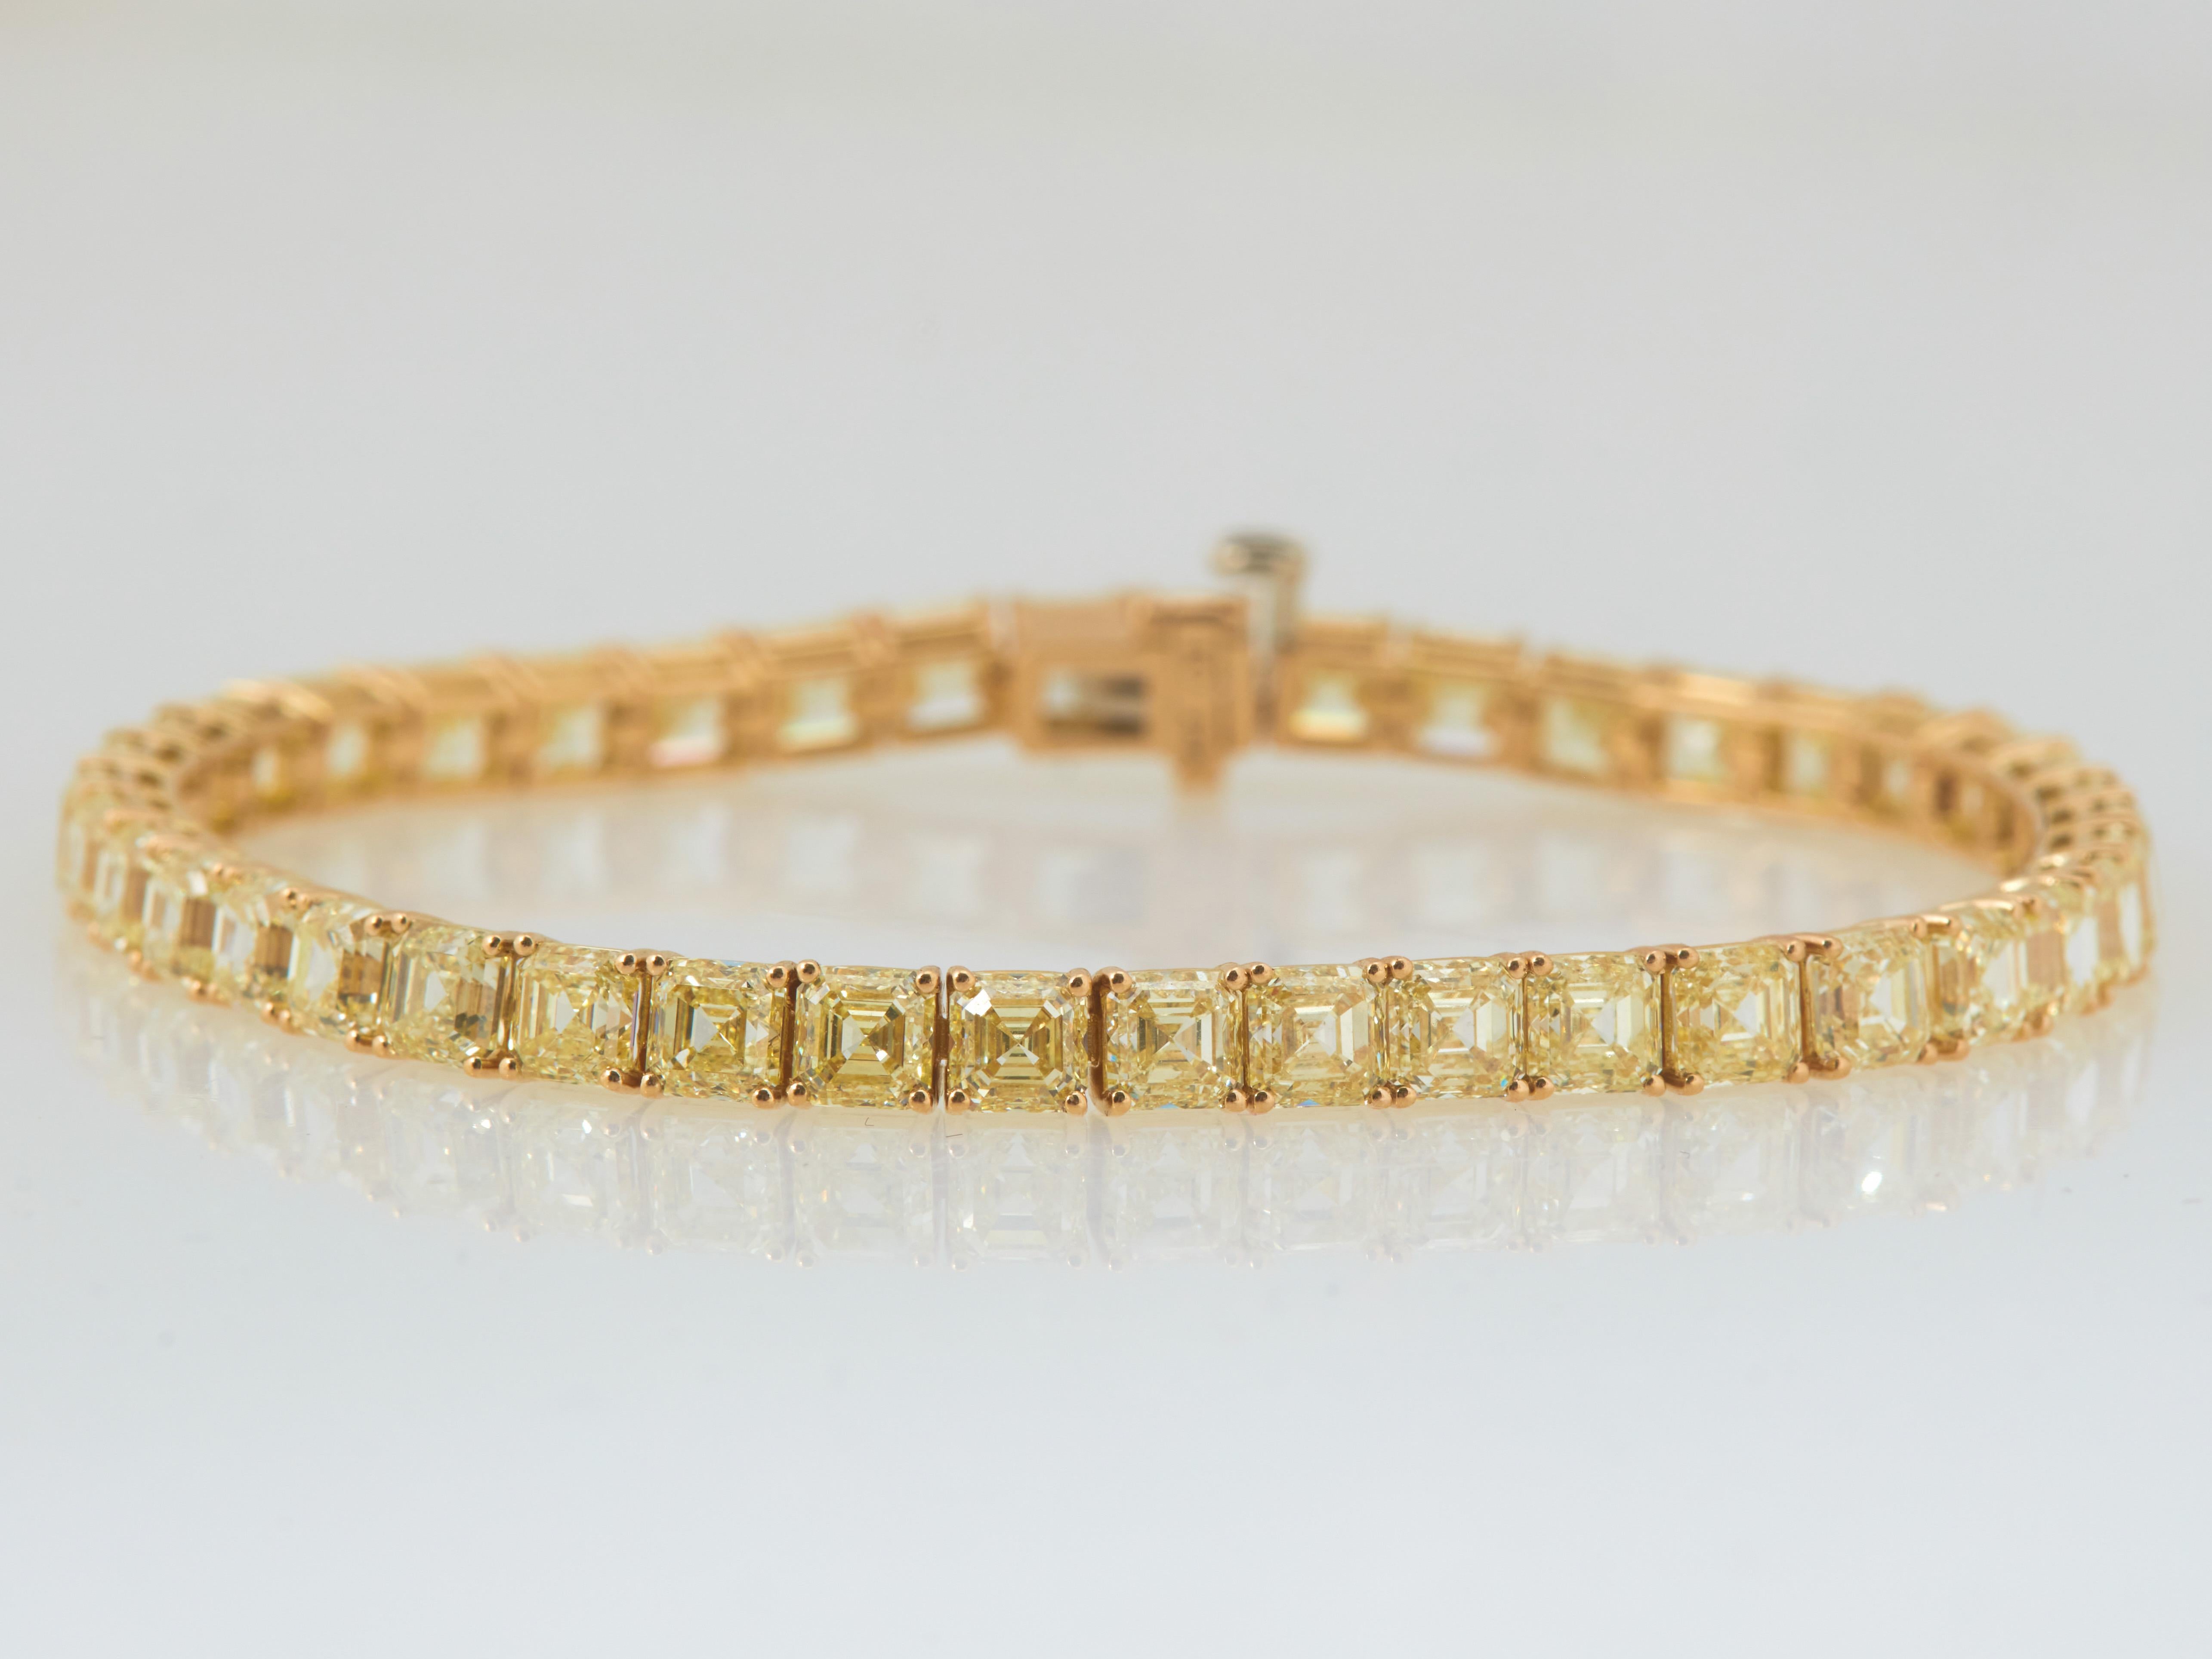 Extraordinaire bracelet en diamants jaunes taille Asscher. Chaque diamant fait un peu moins d'un demi-carat. Réalisé en or jaune 18 carats poli, d'un poids total d'environ 20,87 carats.
Les coupes Asscher sont super rares lorsqu'il s'agit de